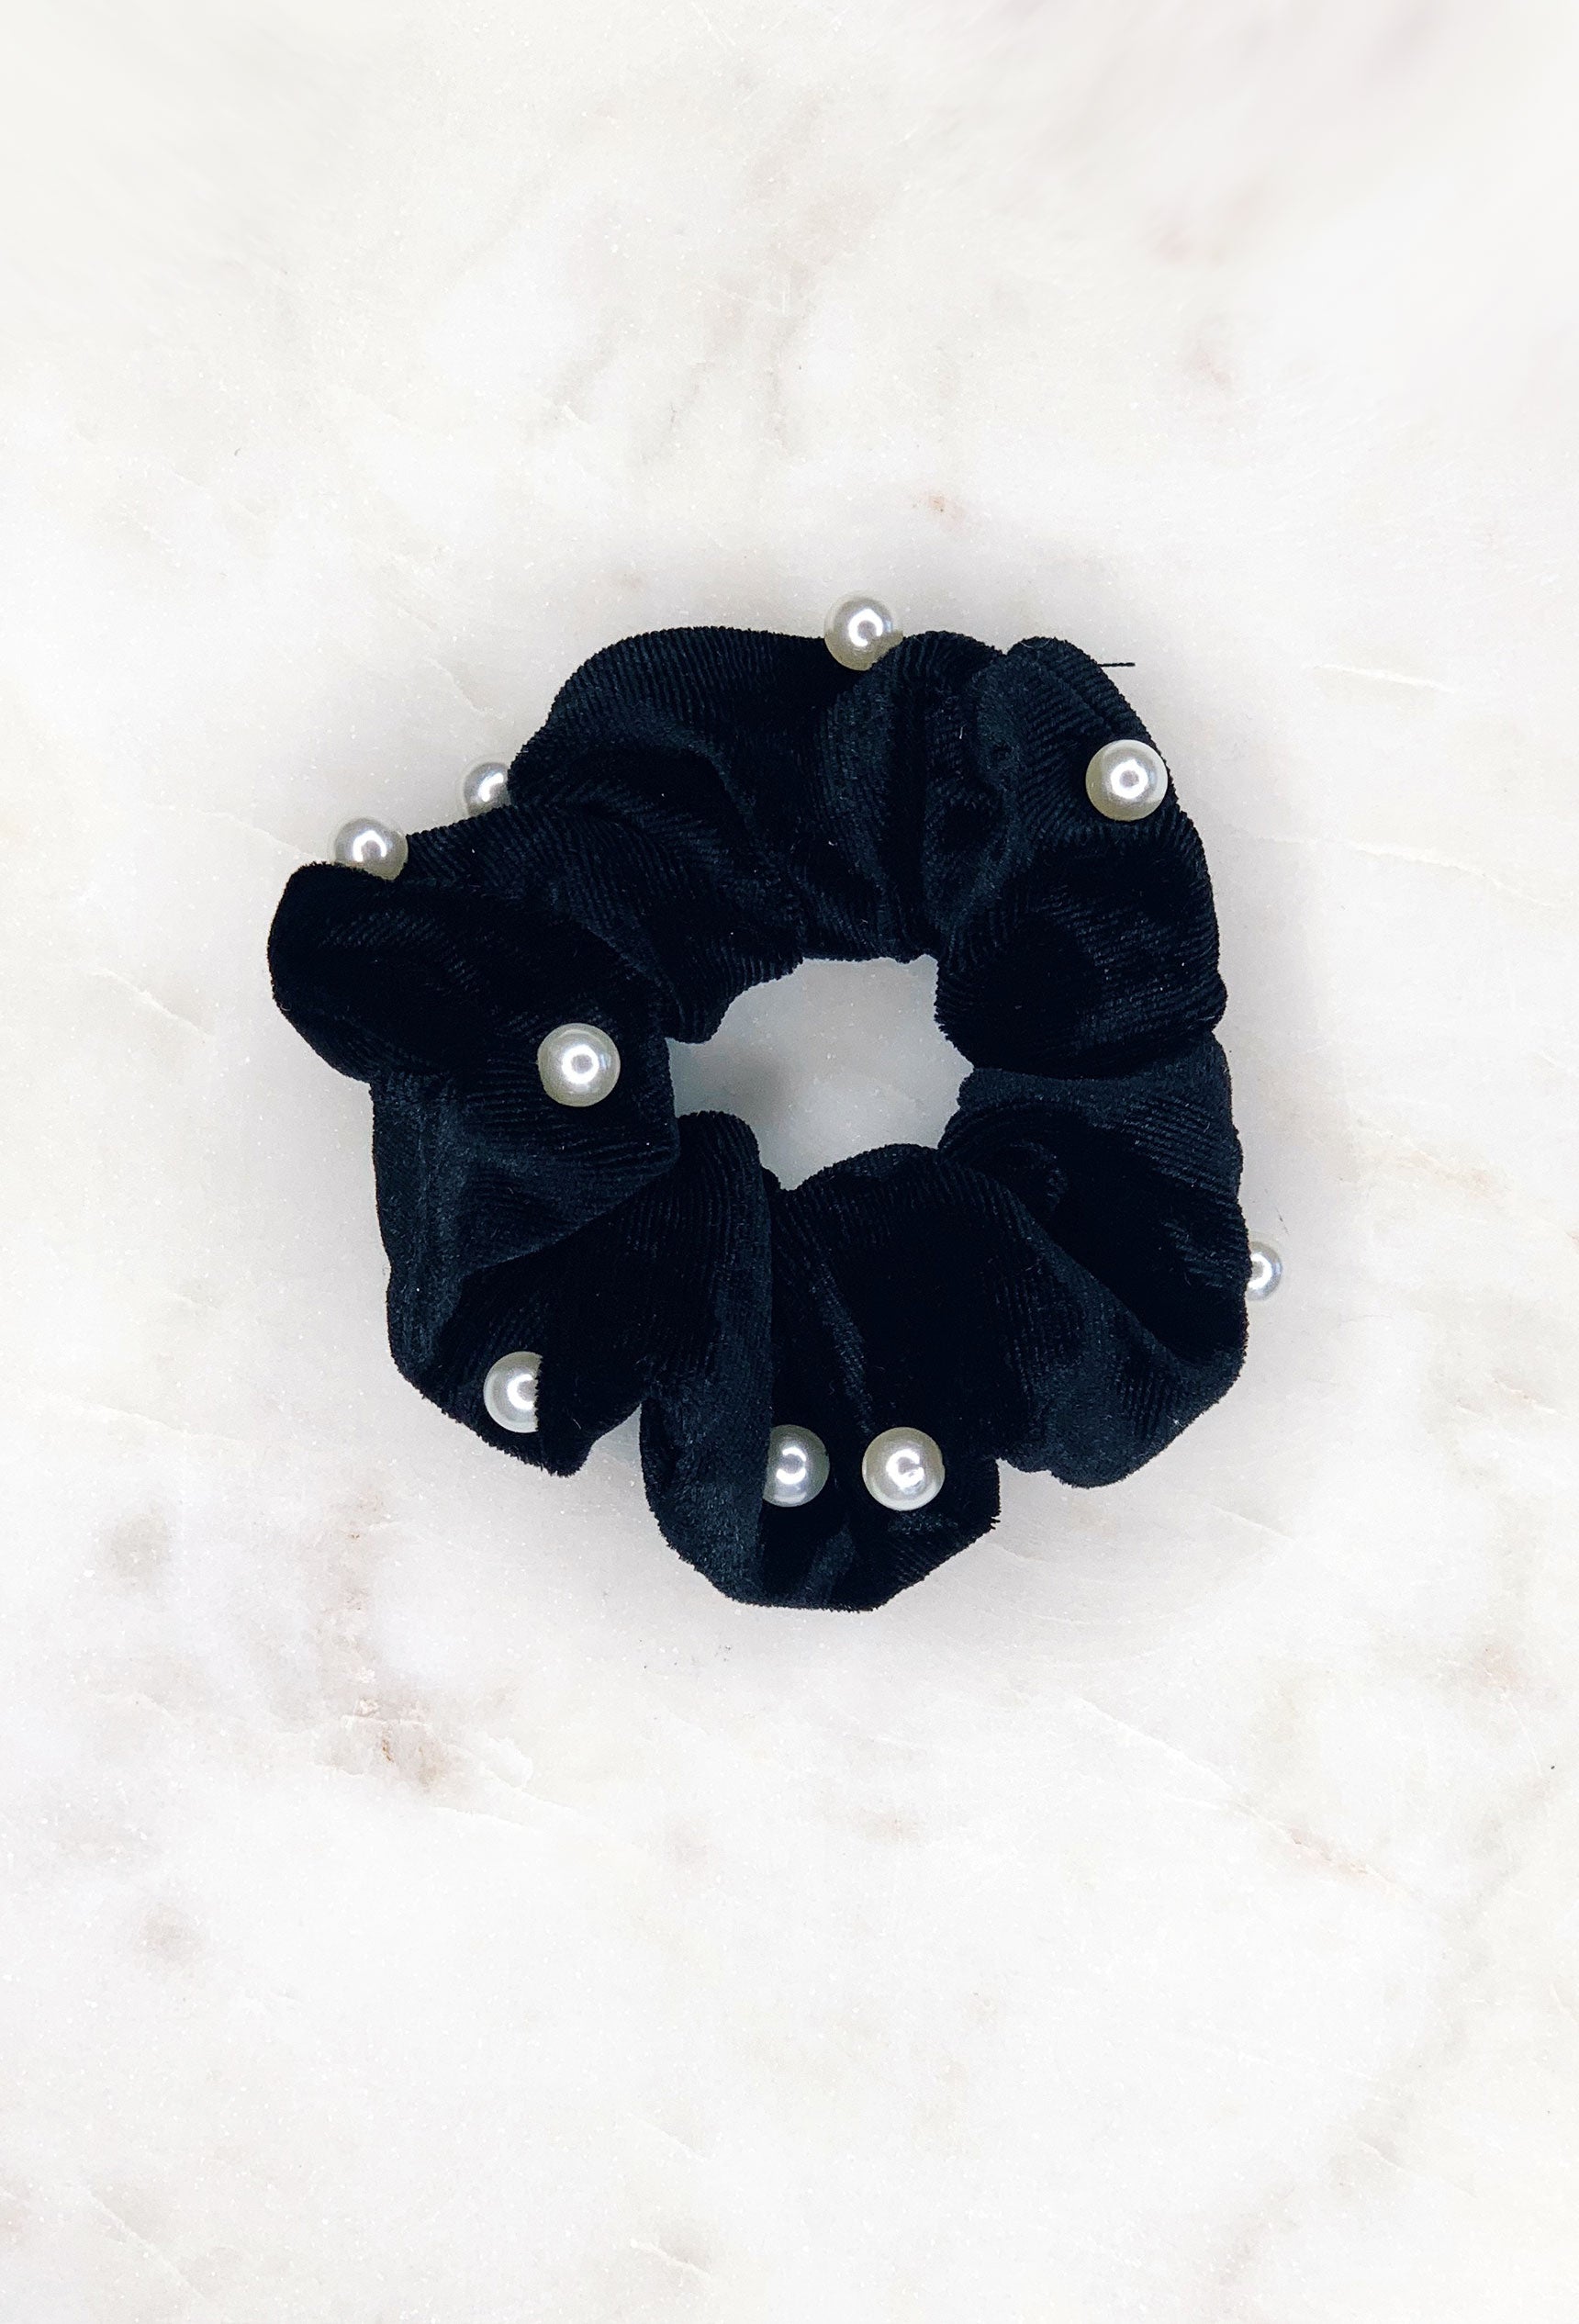 Velvet Pearl Scrunchie in Black, black velvet scrunchies with pearls sewn on 